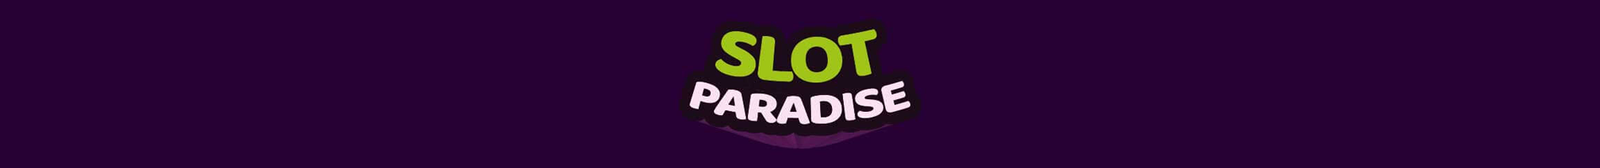 Slotparadise casino